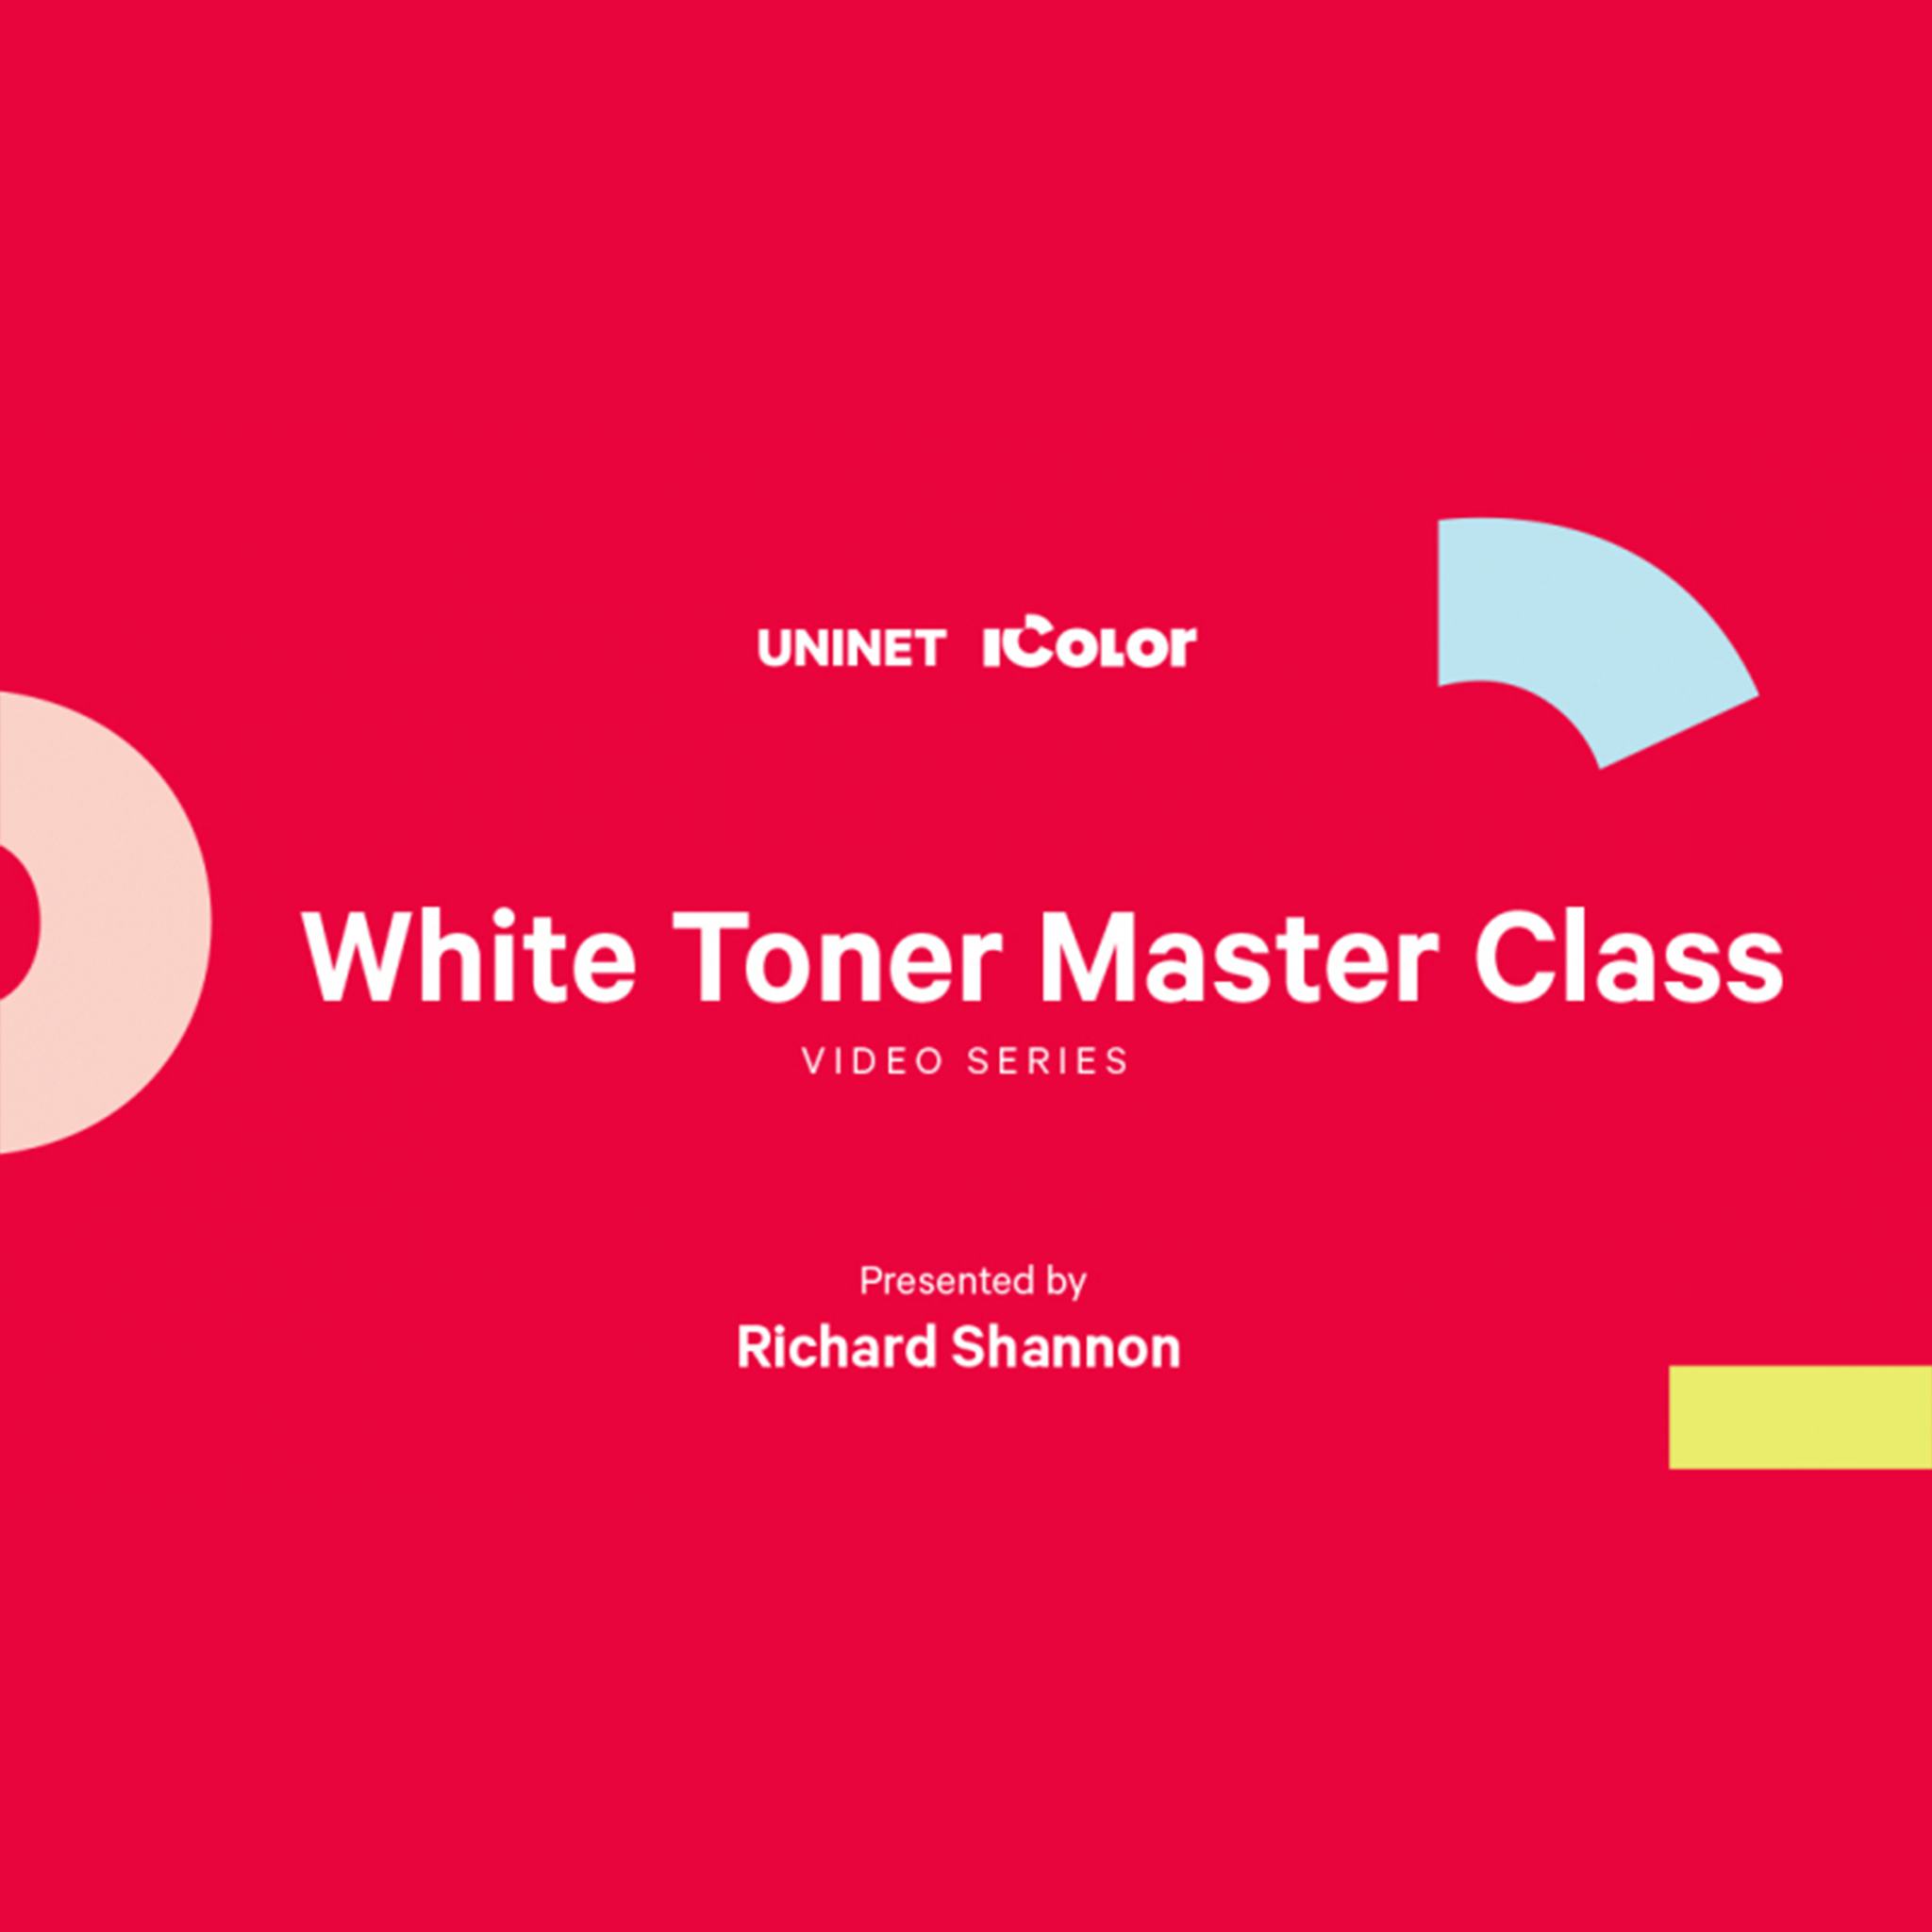 Uninet iColor 650 White Toner Transfer Printer - Pro Package